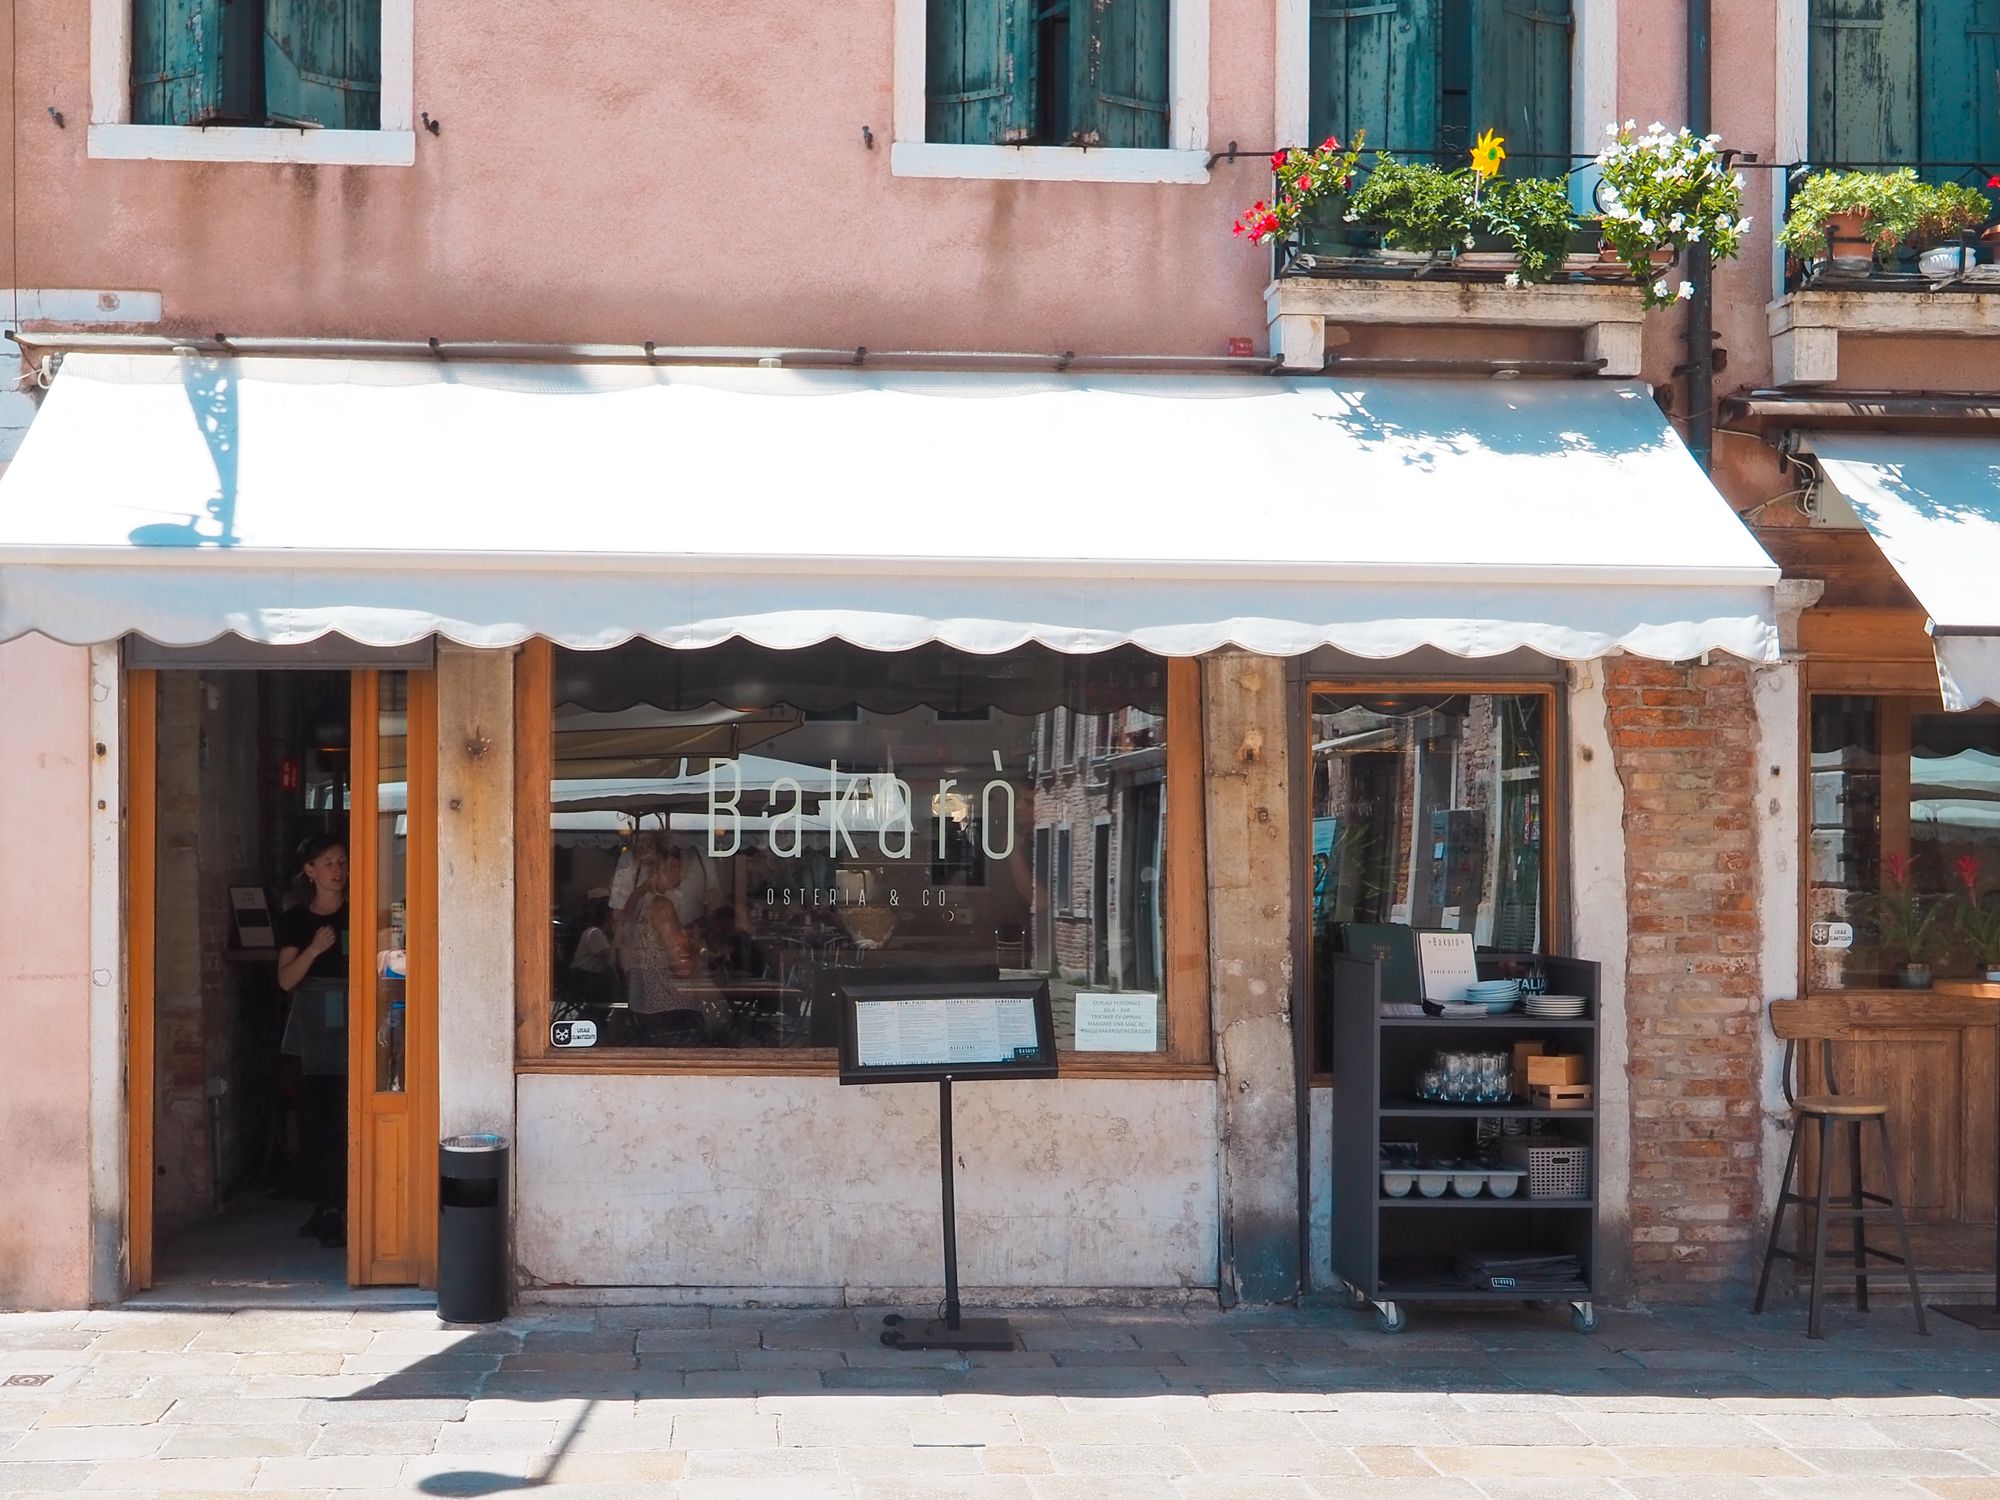 sostenibilità e ambiente nei ristoranti di venezia https://unsplash.com/it/foto/tG3ko8P1Auc